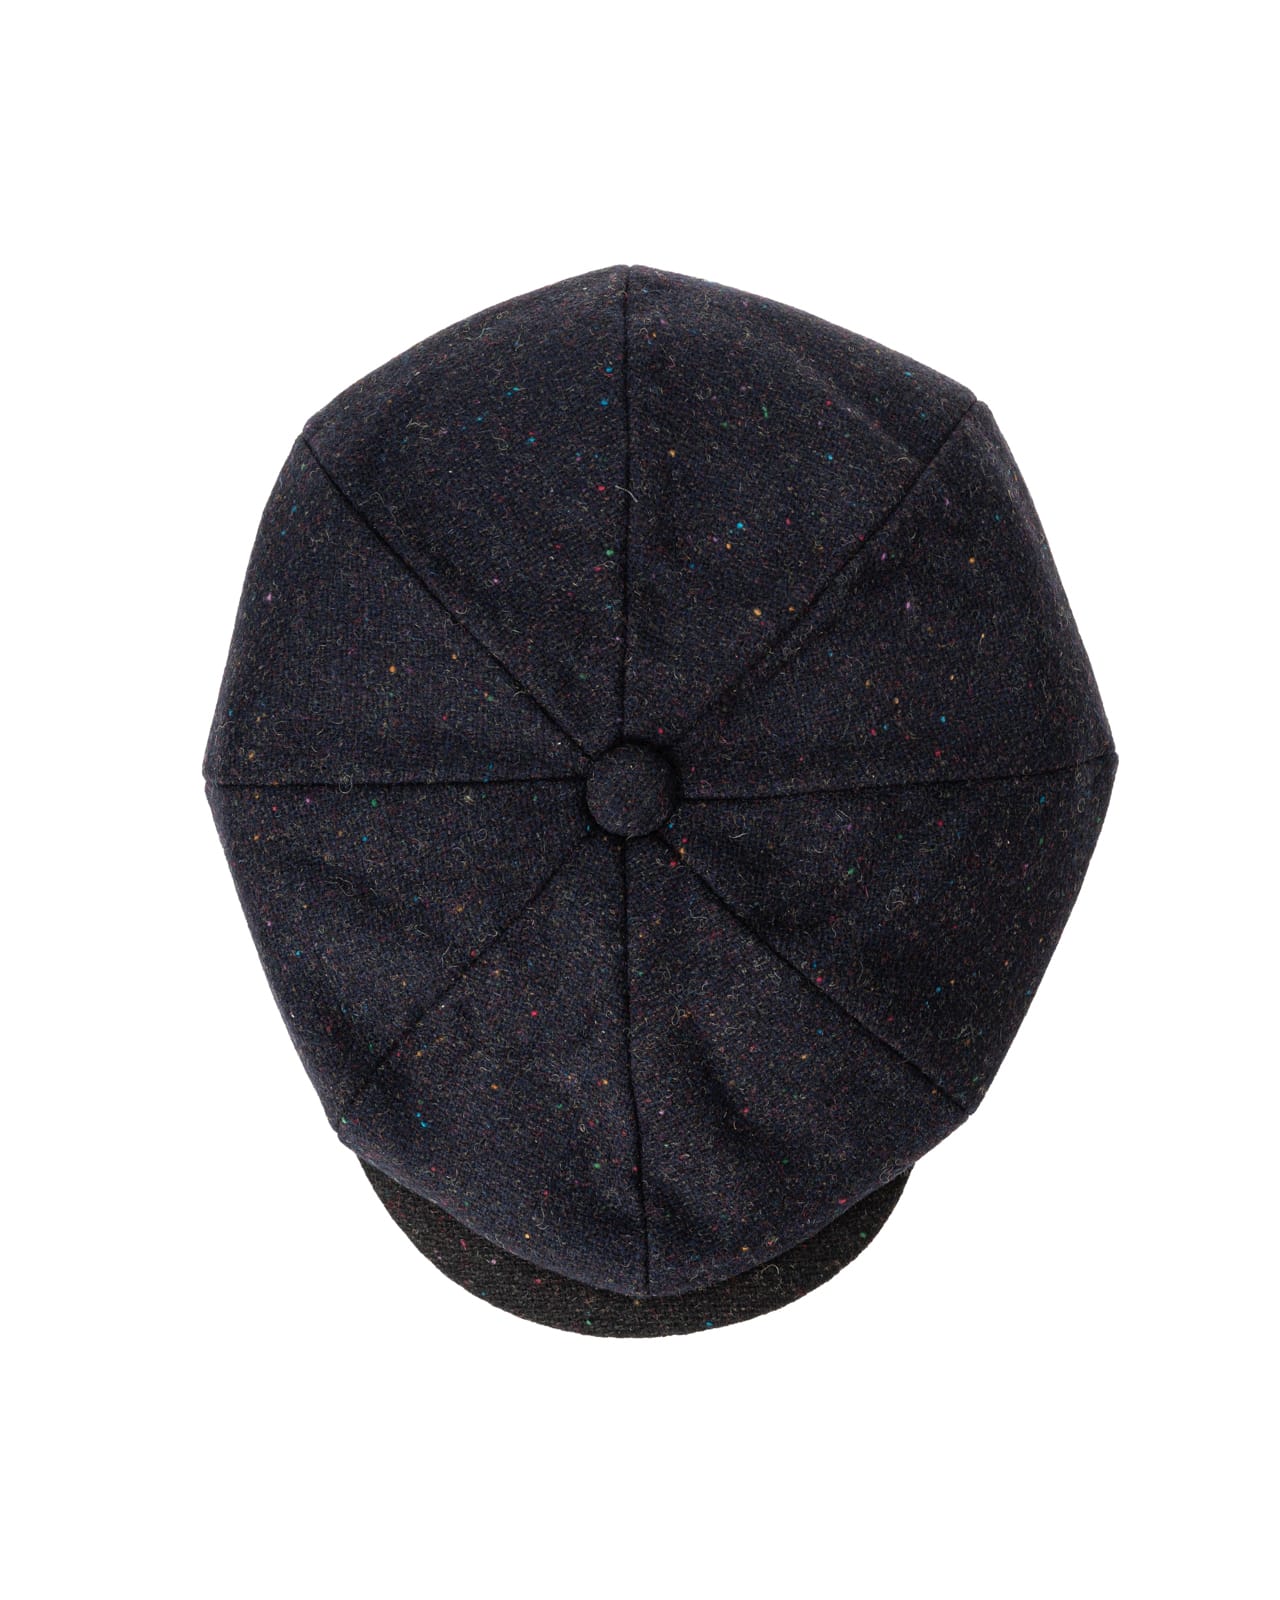 Paul Smith wool flat cap